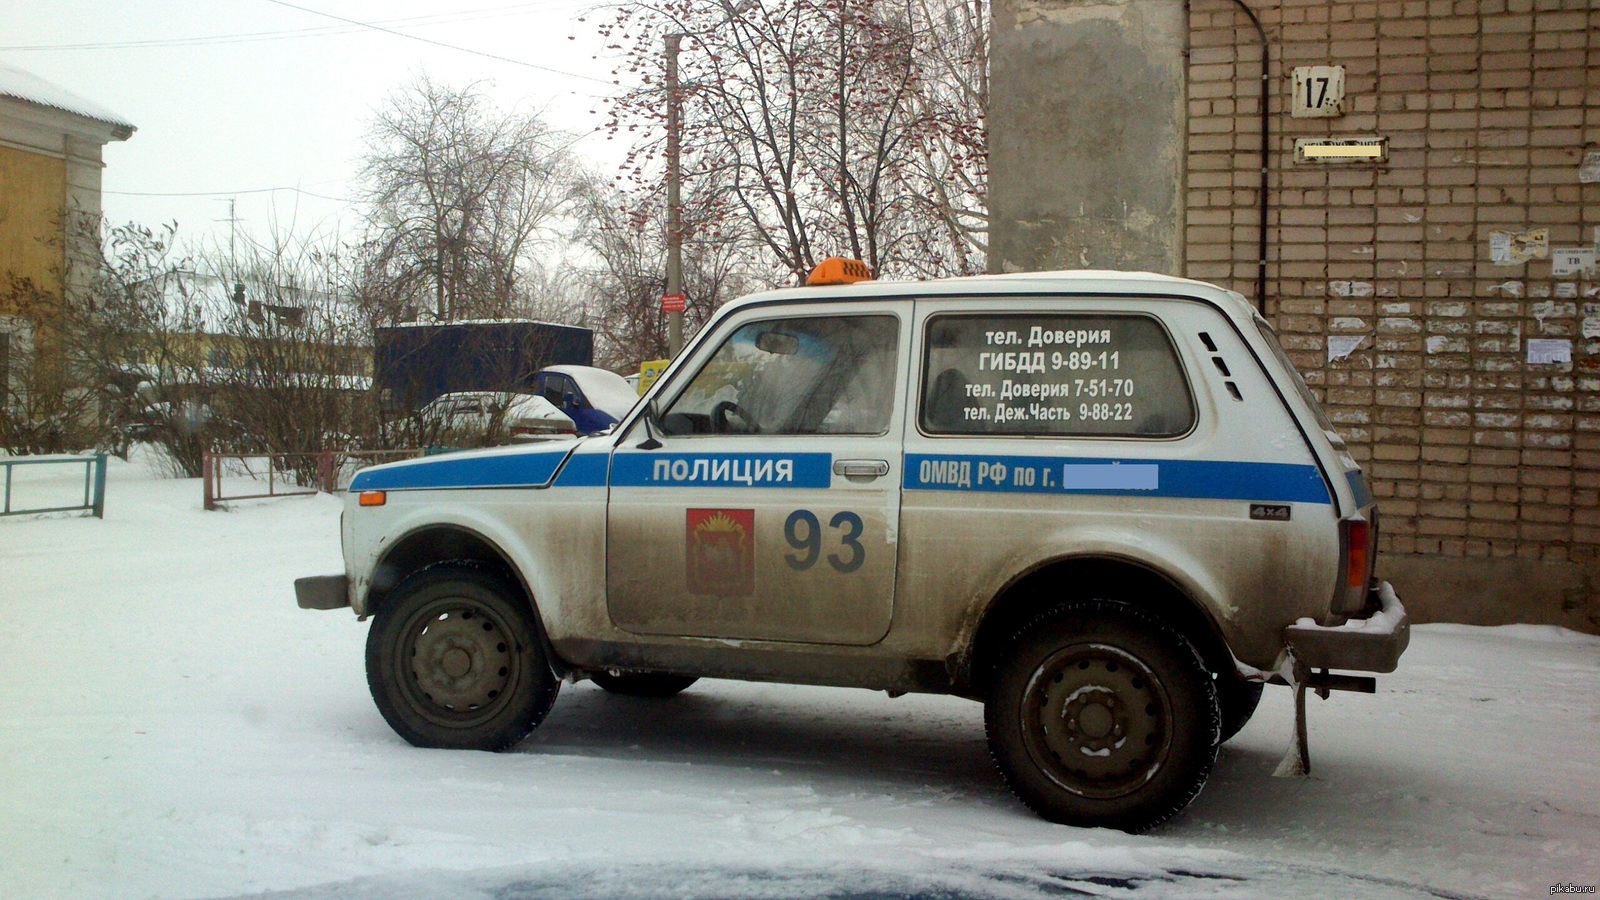 Телефон деж части. Такси вези Николаев. Такси полиция. Такси такси вези. Такси такси вези вези вдоль ночных дорог.